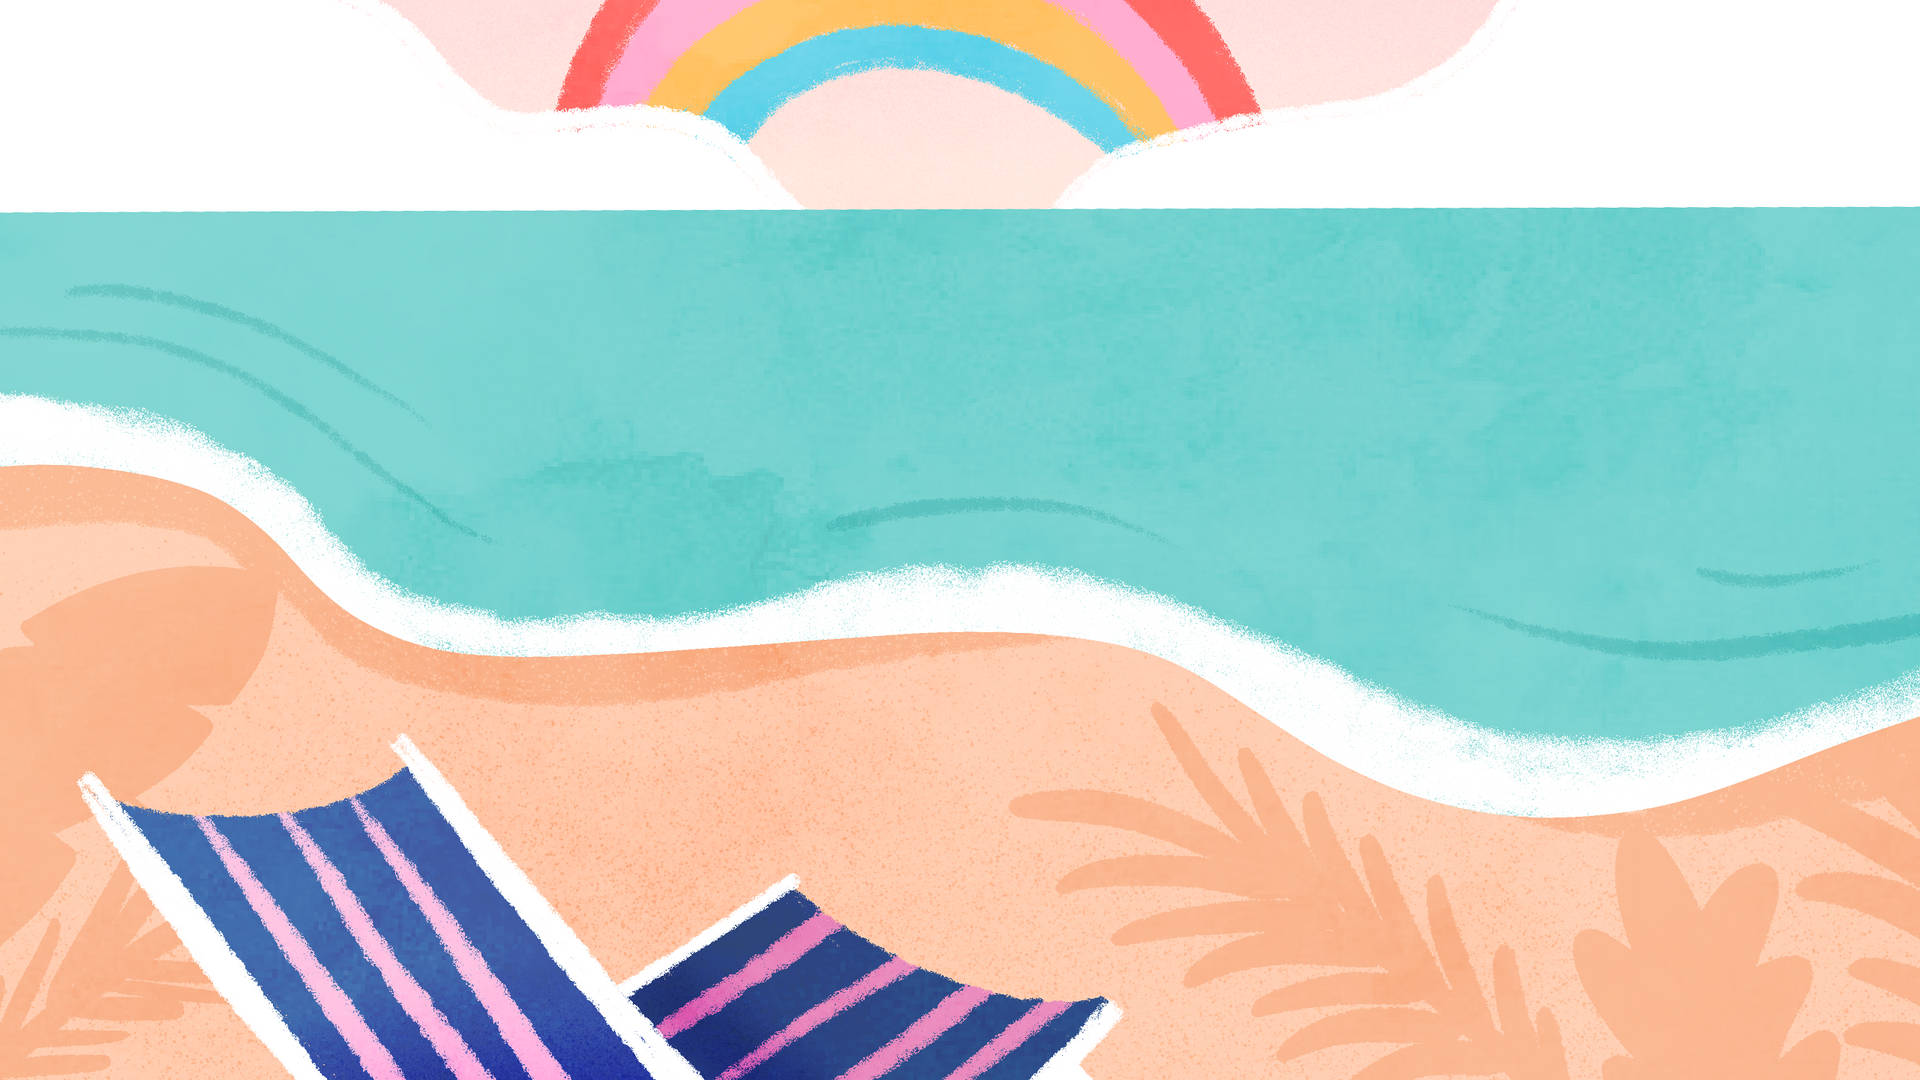 2560x1440 Summer Beach Illustration Background